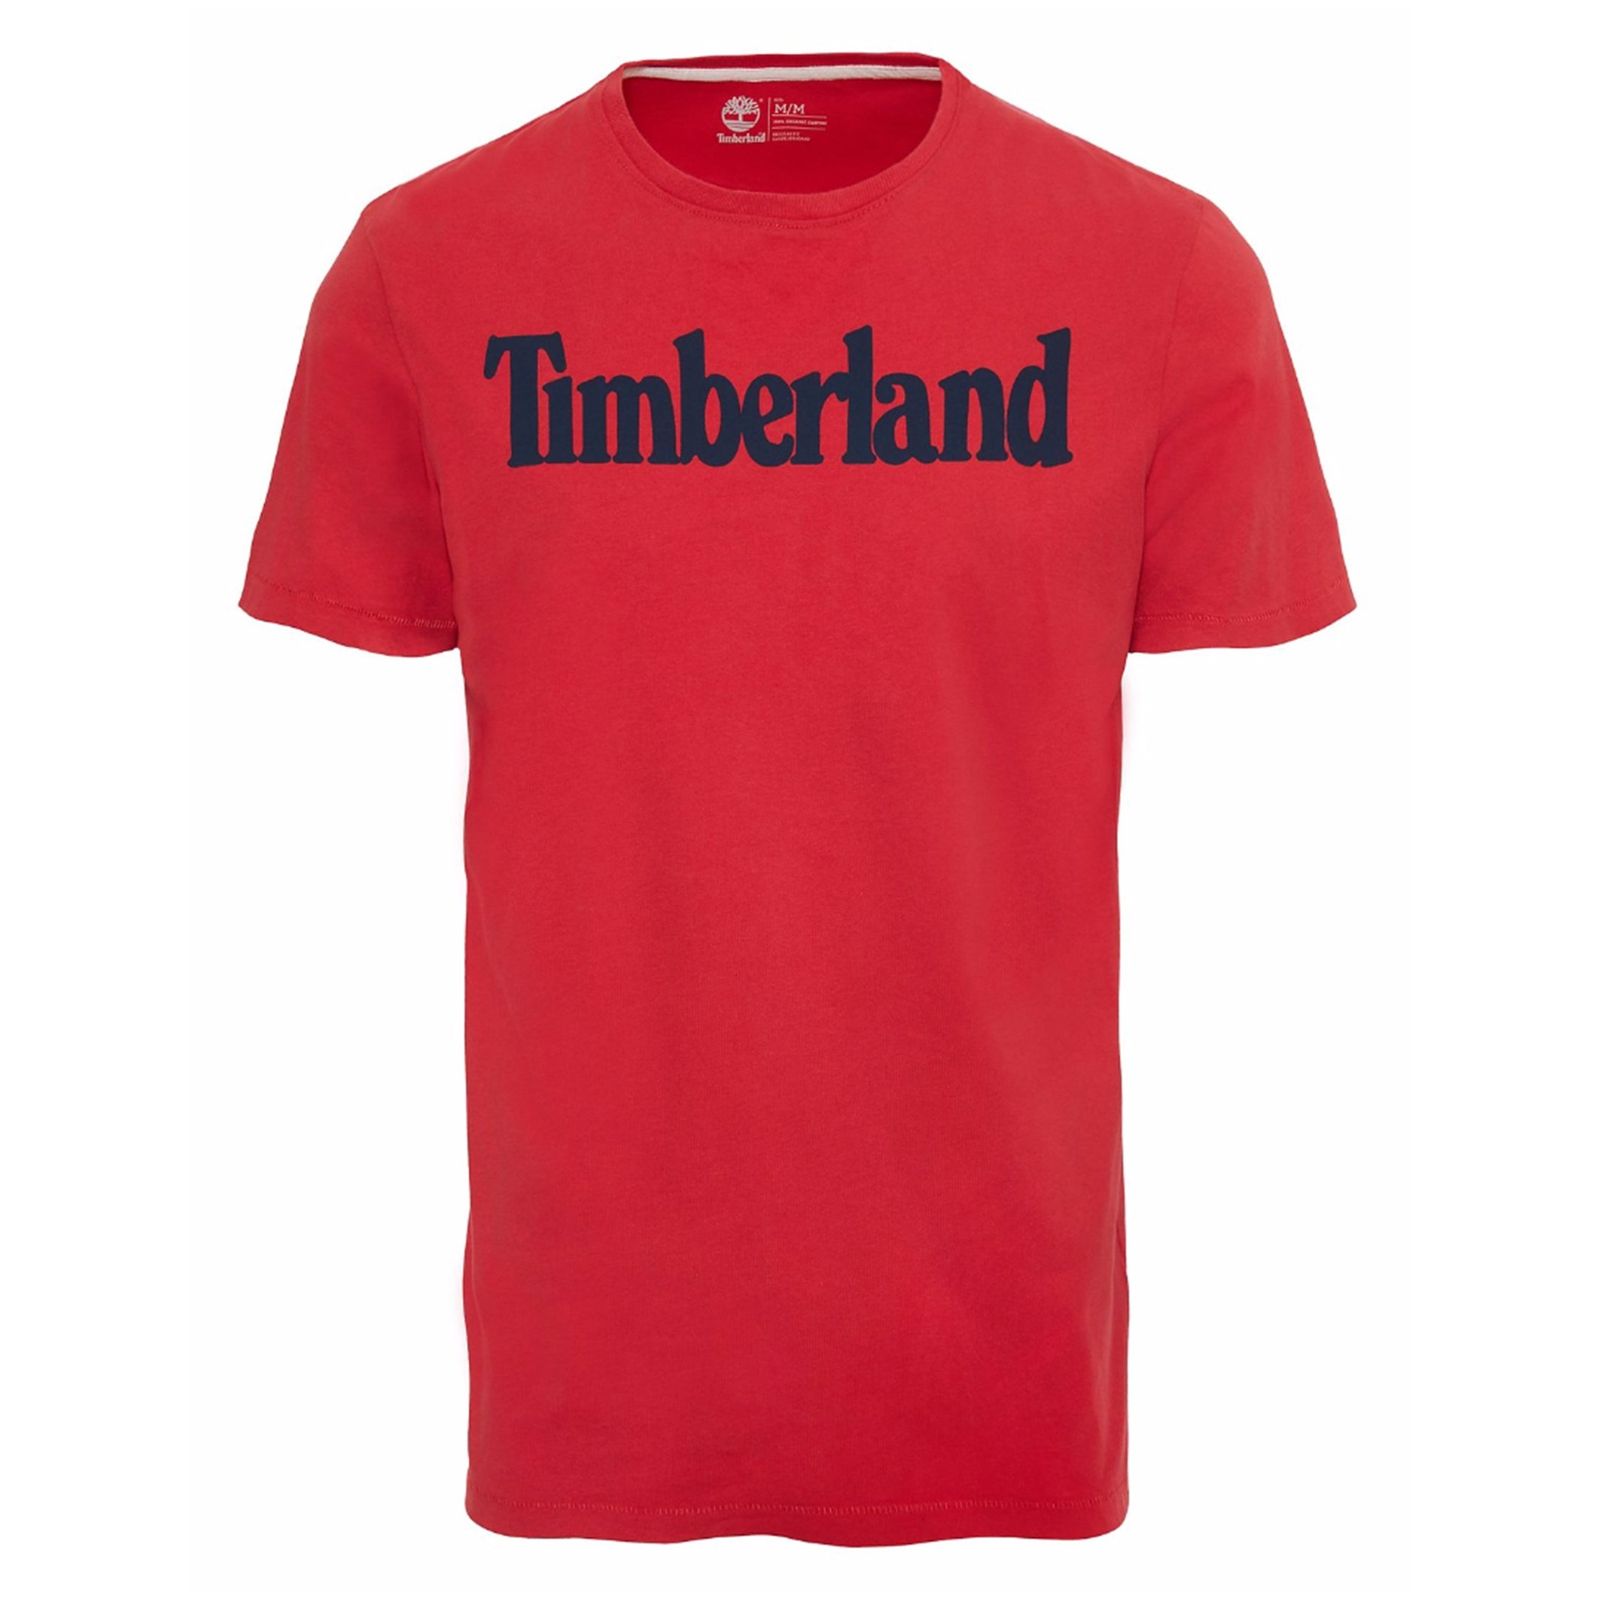 تی شرت نخی آستین کوتاه مردانه - تیمبرلند - قرمز - 1